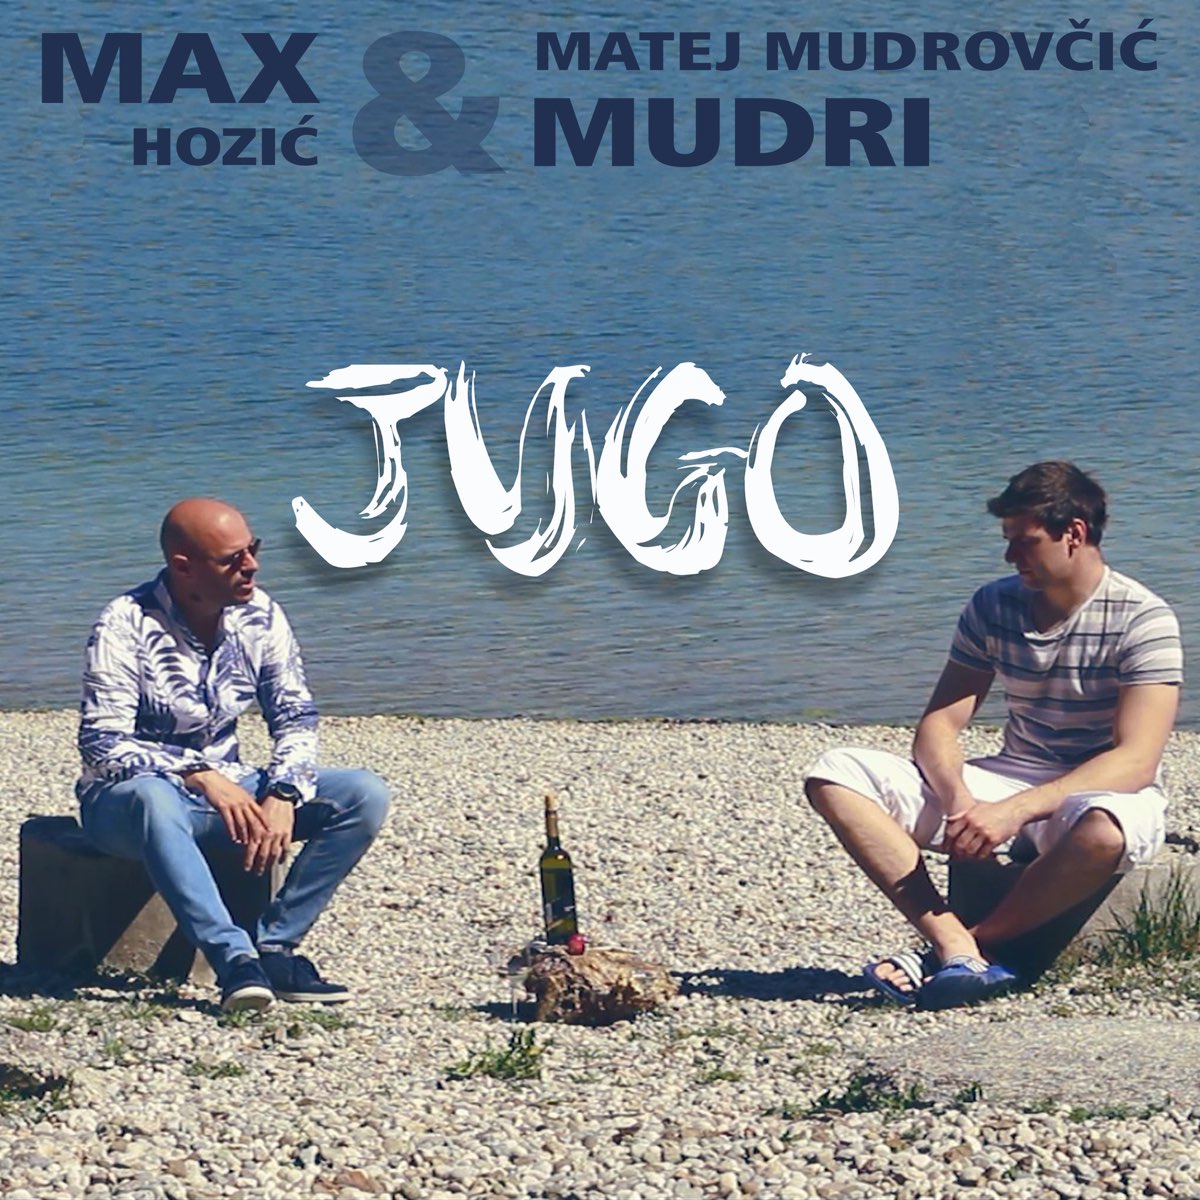 Jugo - Single - Album by Max Hozić & Matej Mudrovčić Mudri - Apple Music